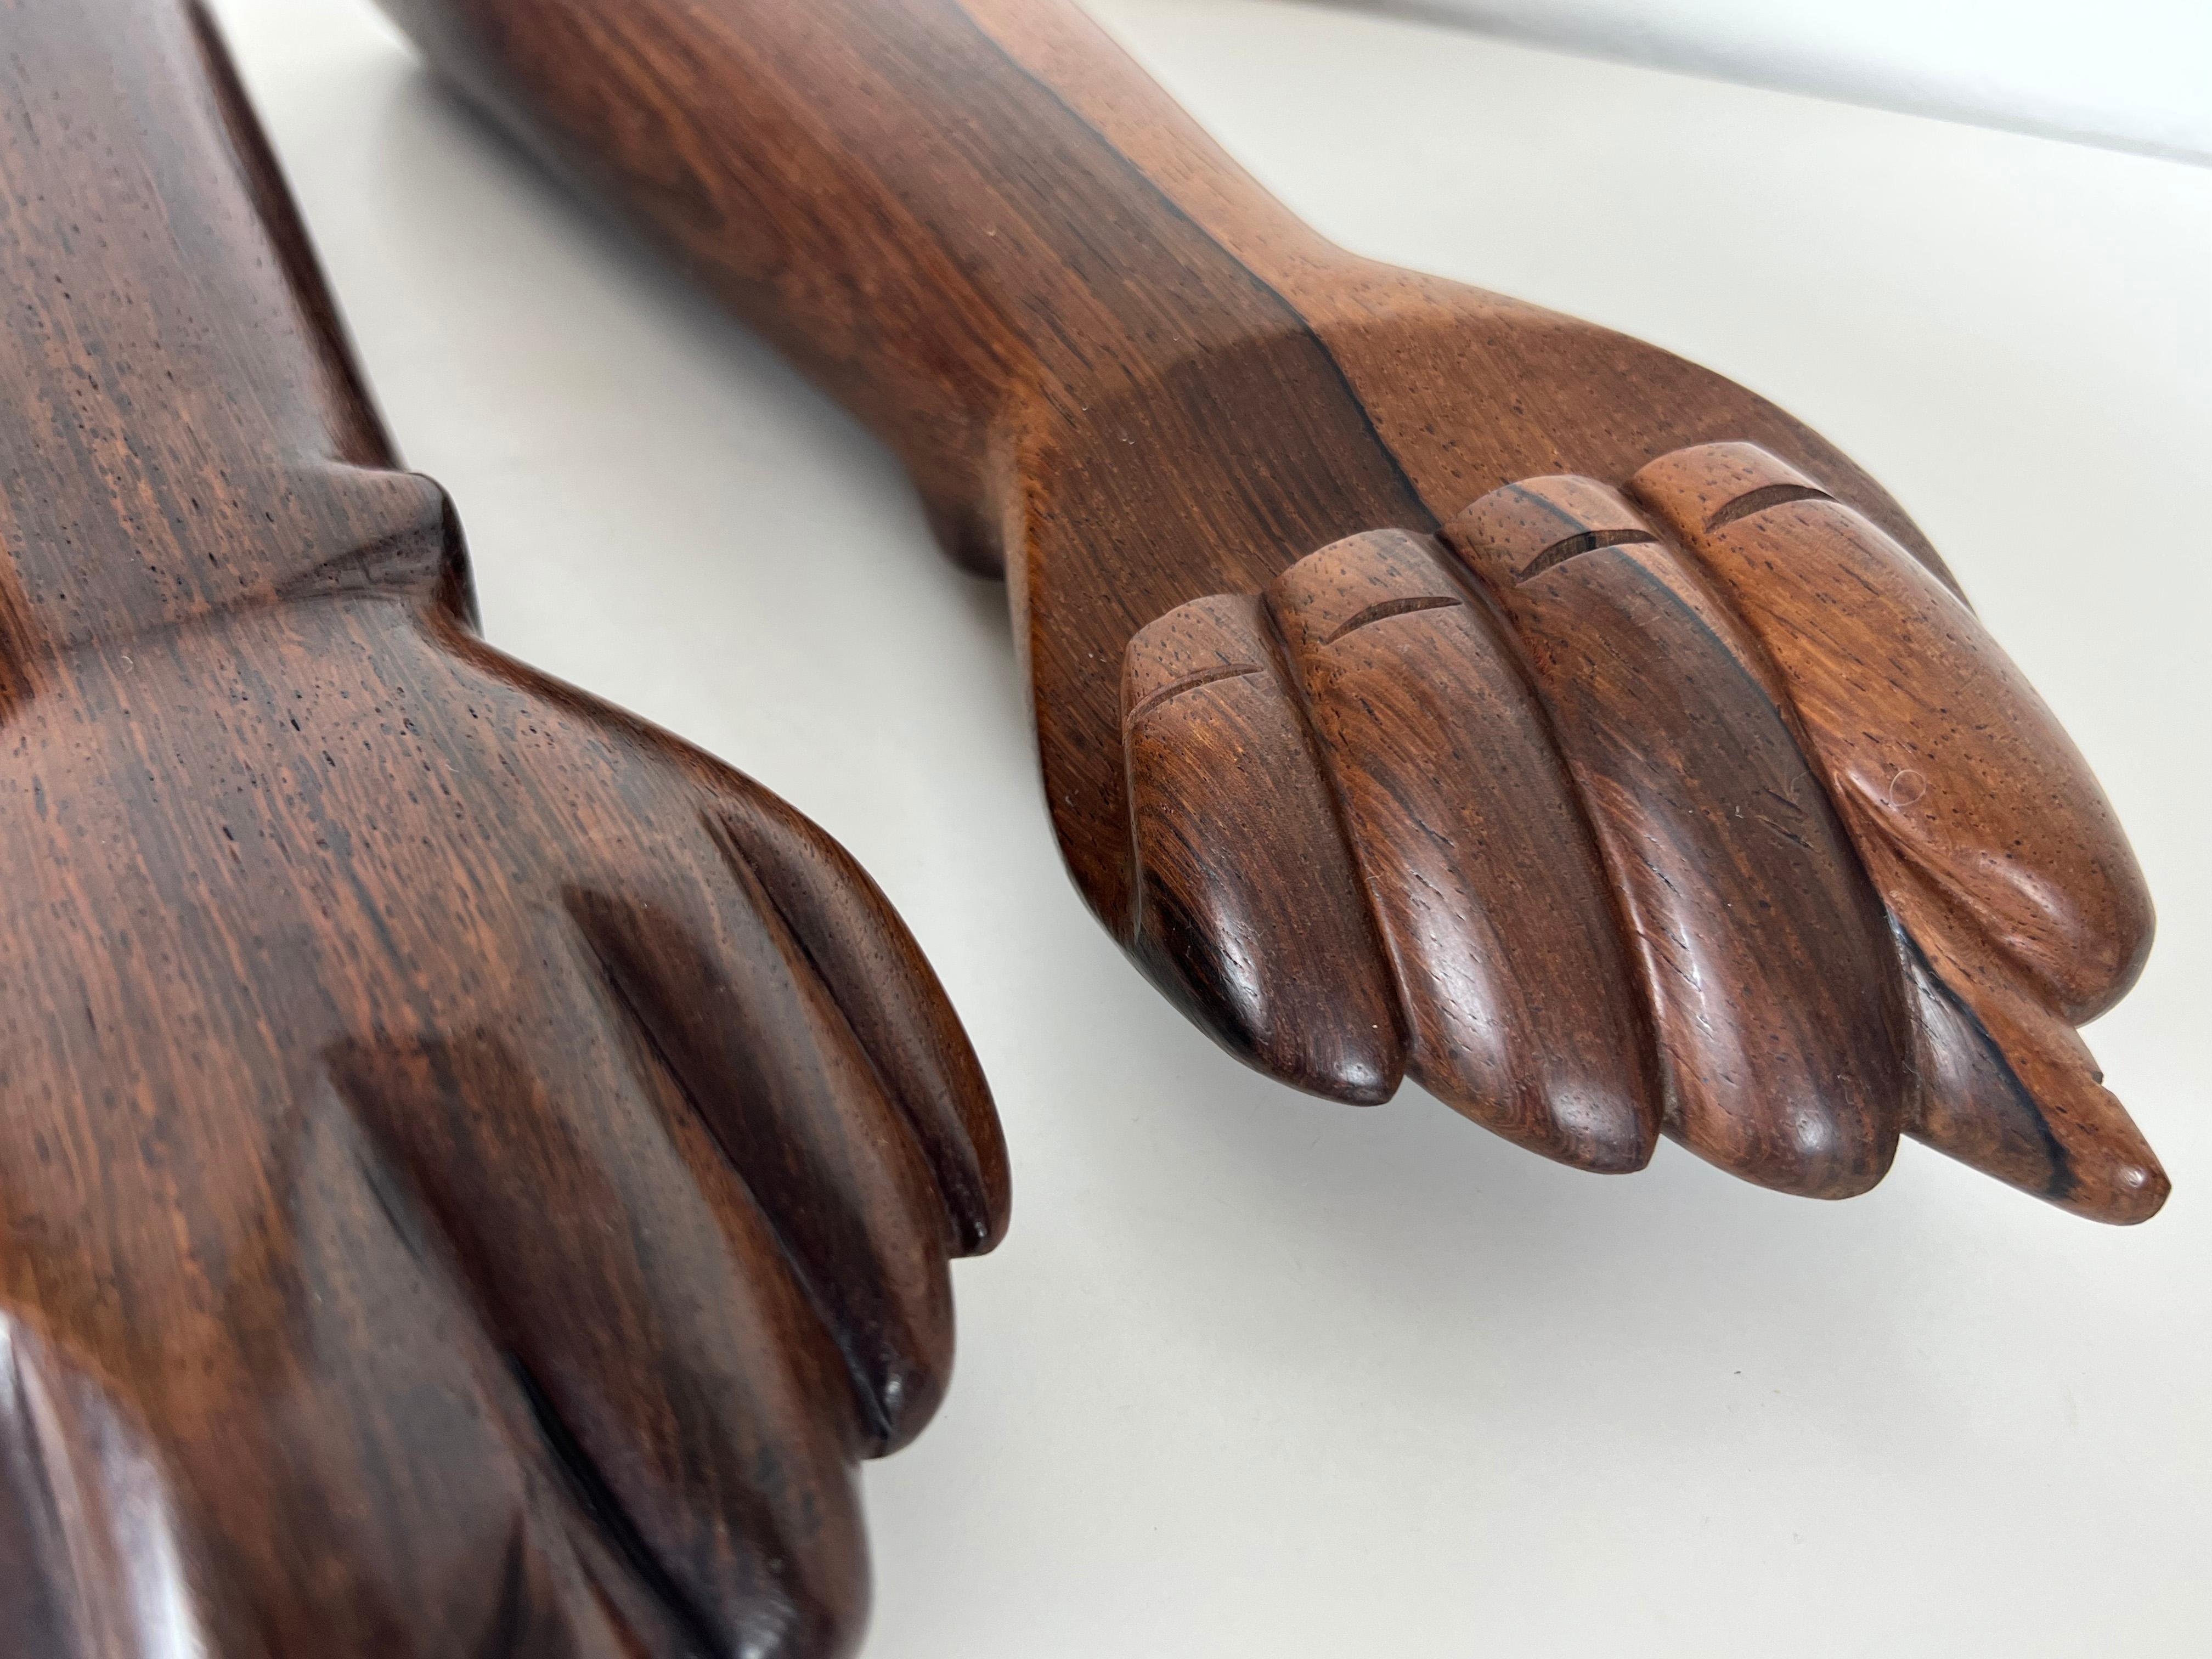 Brazilian Jacaranda Rosewood Hand Sculptures by Jac-Arte - a Pair 11